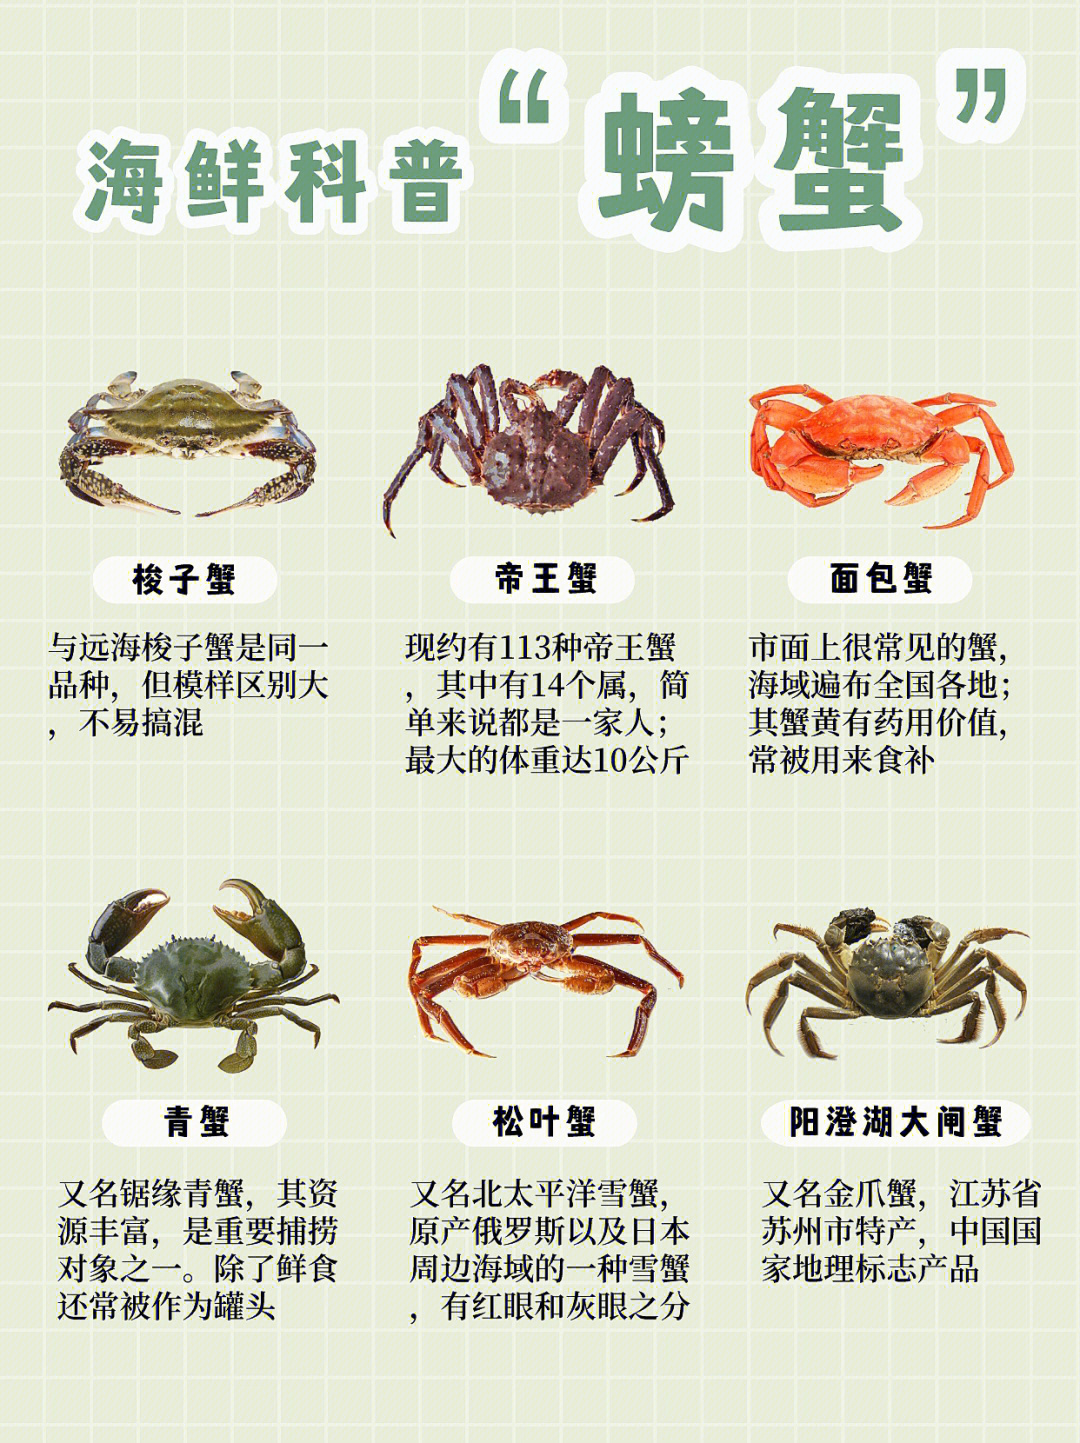 螃蟹品种大全中国图片